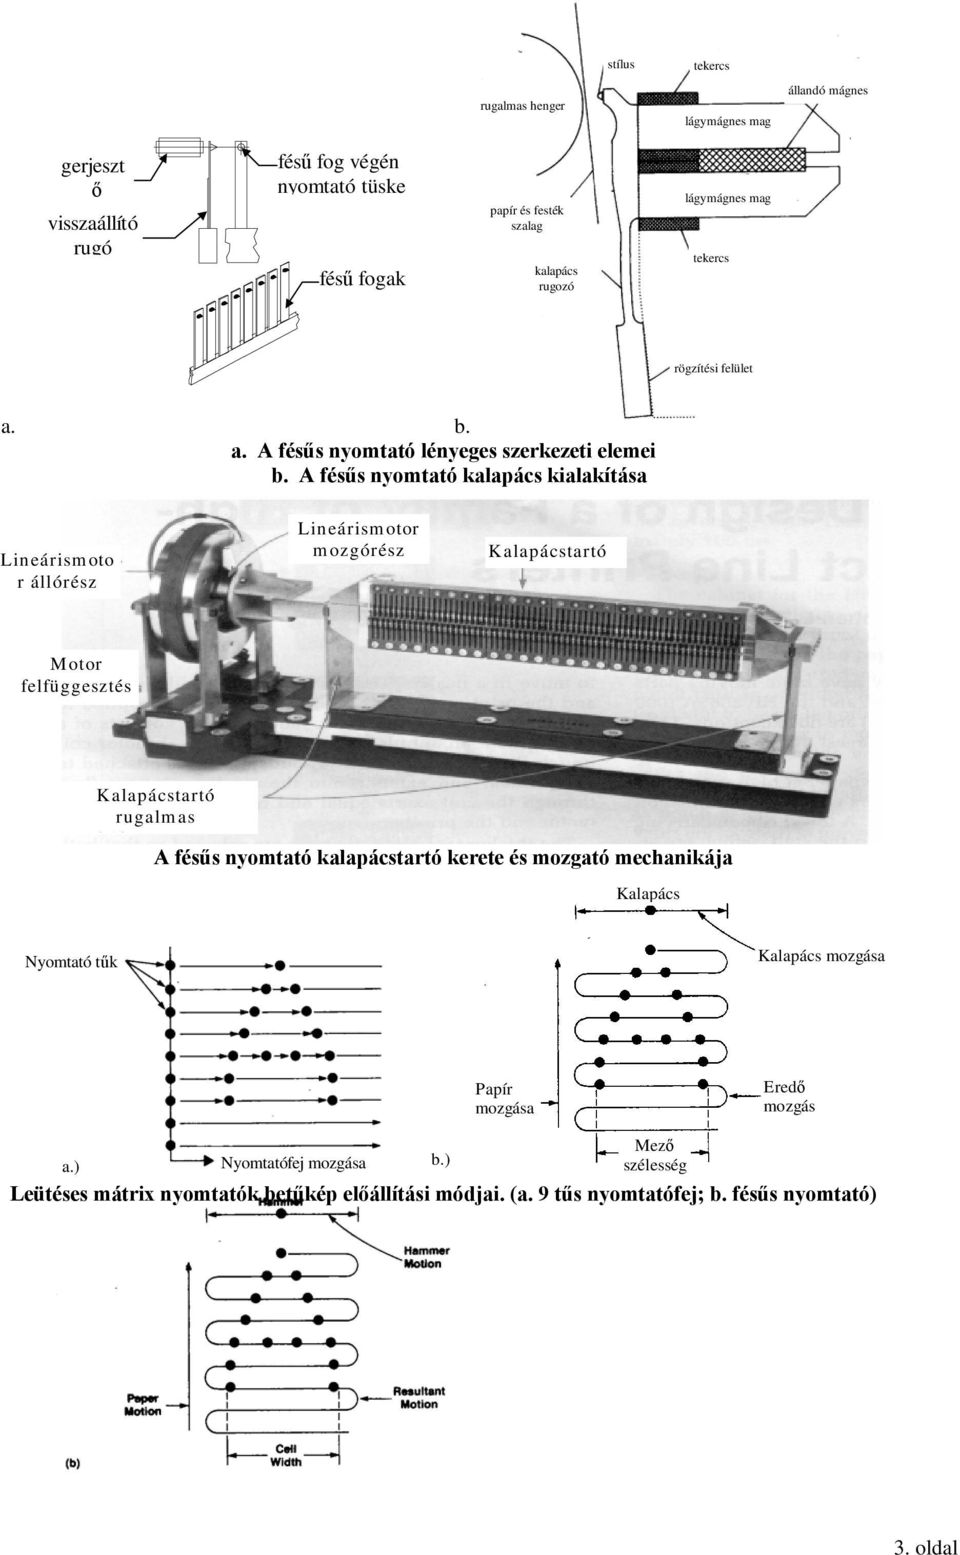 A fésűs nyomtató kalapács kialakítása Lineárismoto r állórész Lineárismotor mozgórész Kalapácstartó Motor felfüggesztés Kalapácstartó rugalmas f lf A fésűs nyomtató